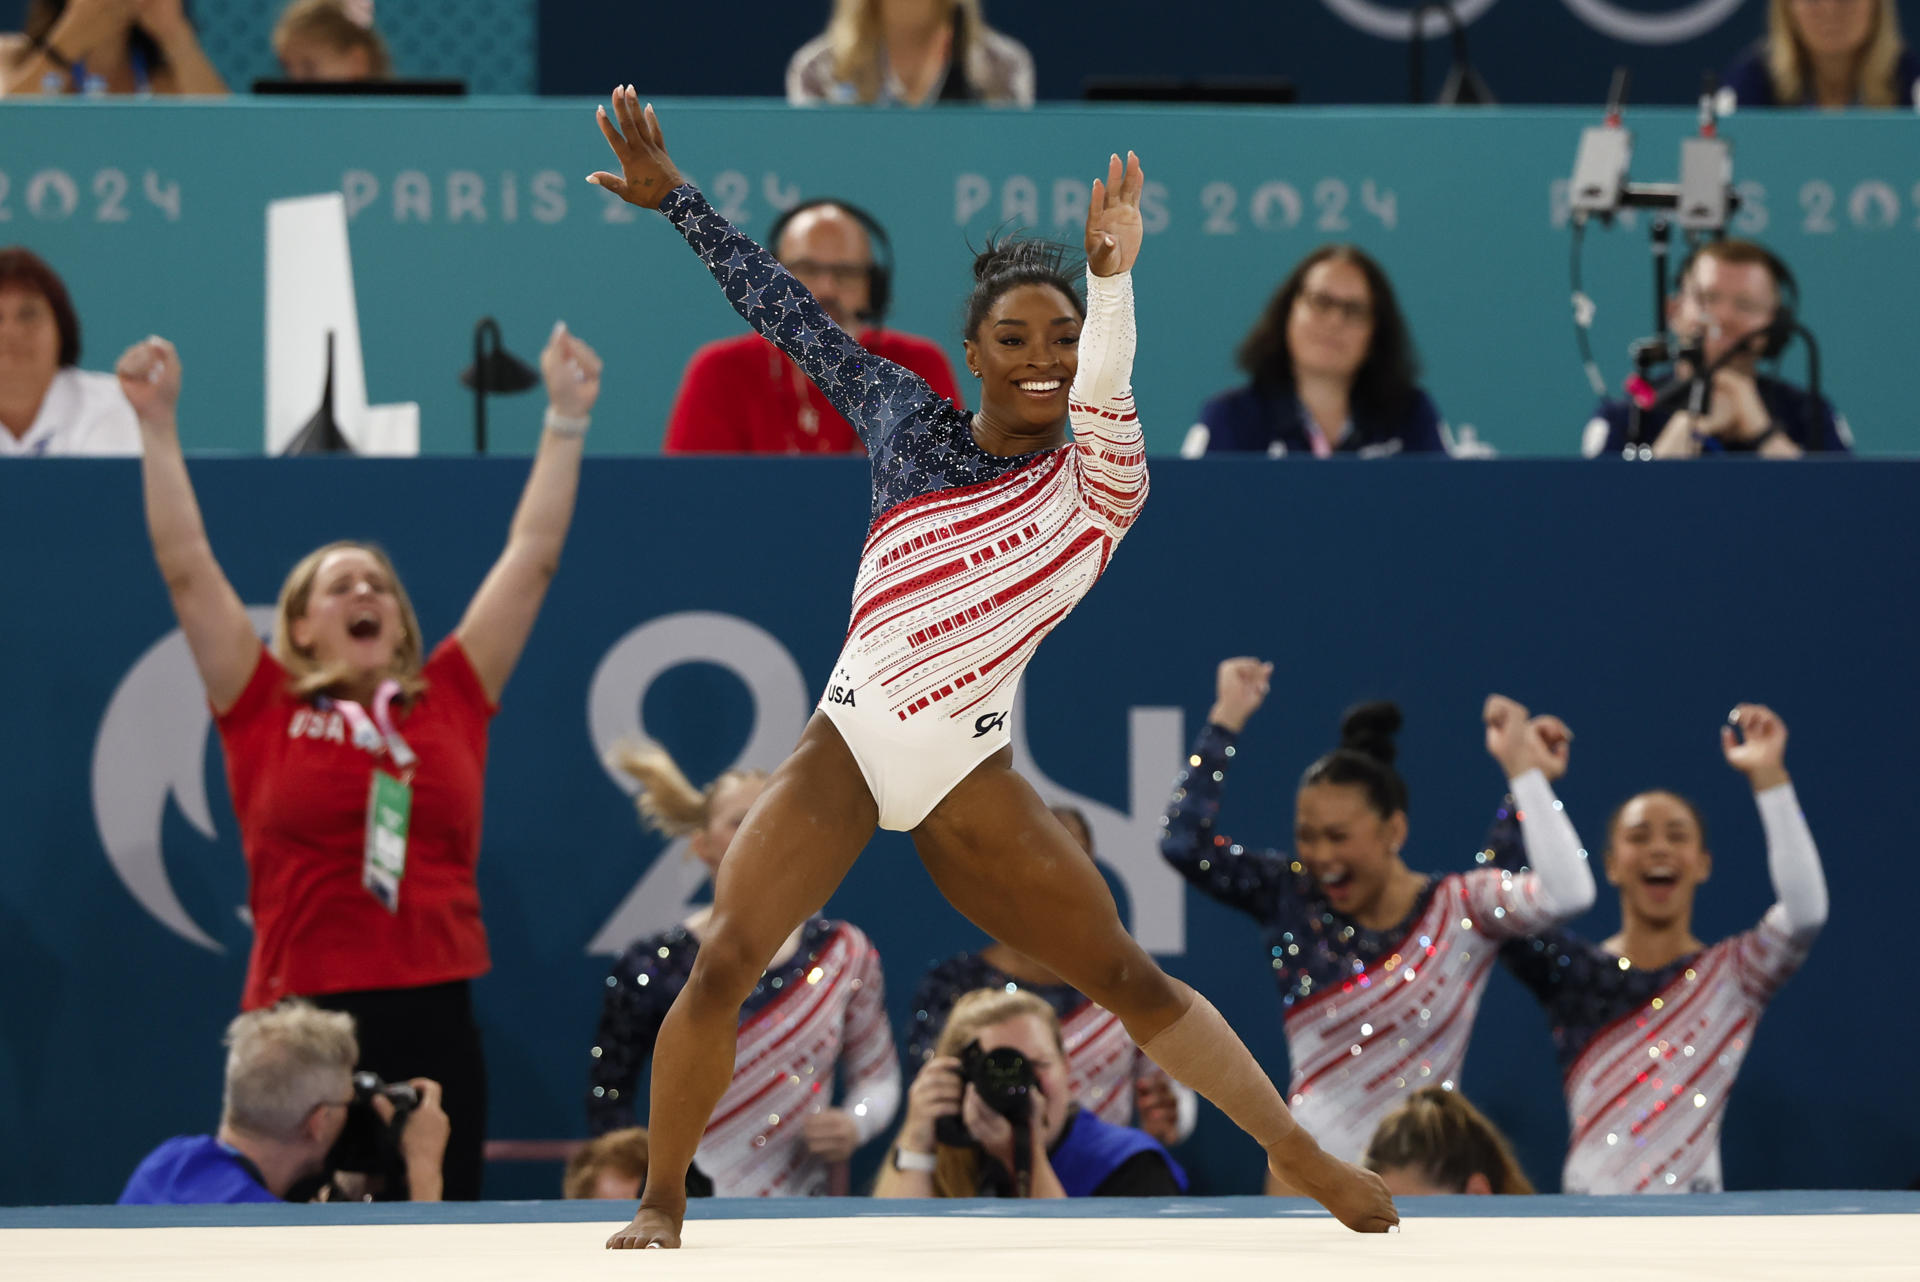 Després de retirar-se de Tòquio 2020, Simone Biles ha tornat a ser l'estrella de l'equip de gimnàstica dels Estats Units que ha guanyat l'or